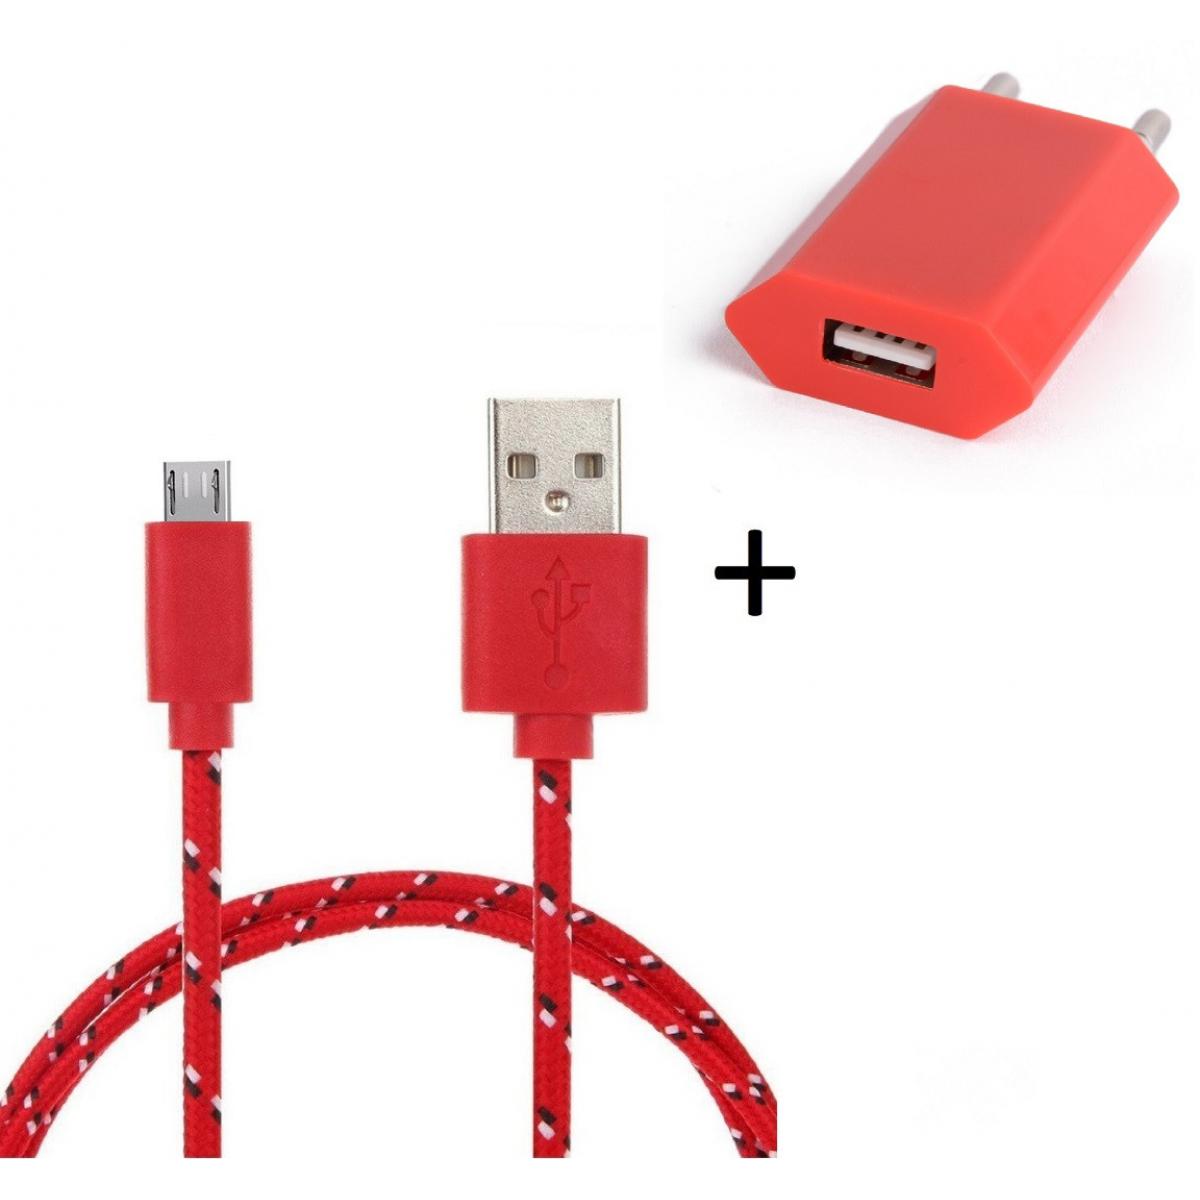 Shot - Pack Chargeur pour XIAOMI Redmi 7 Smartphone Micro USB (Cable Tresse 3m Chargeur + Prise Secteur USB) Murale Android (ROUGE) - Chargeur secteur téléphone